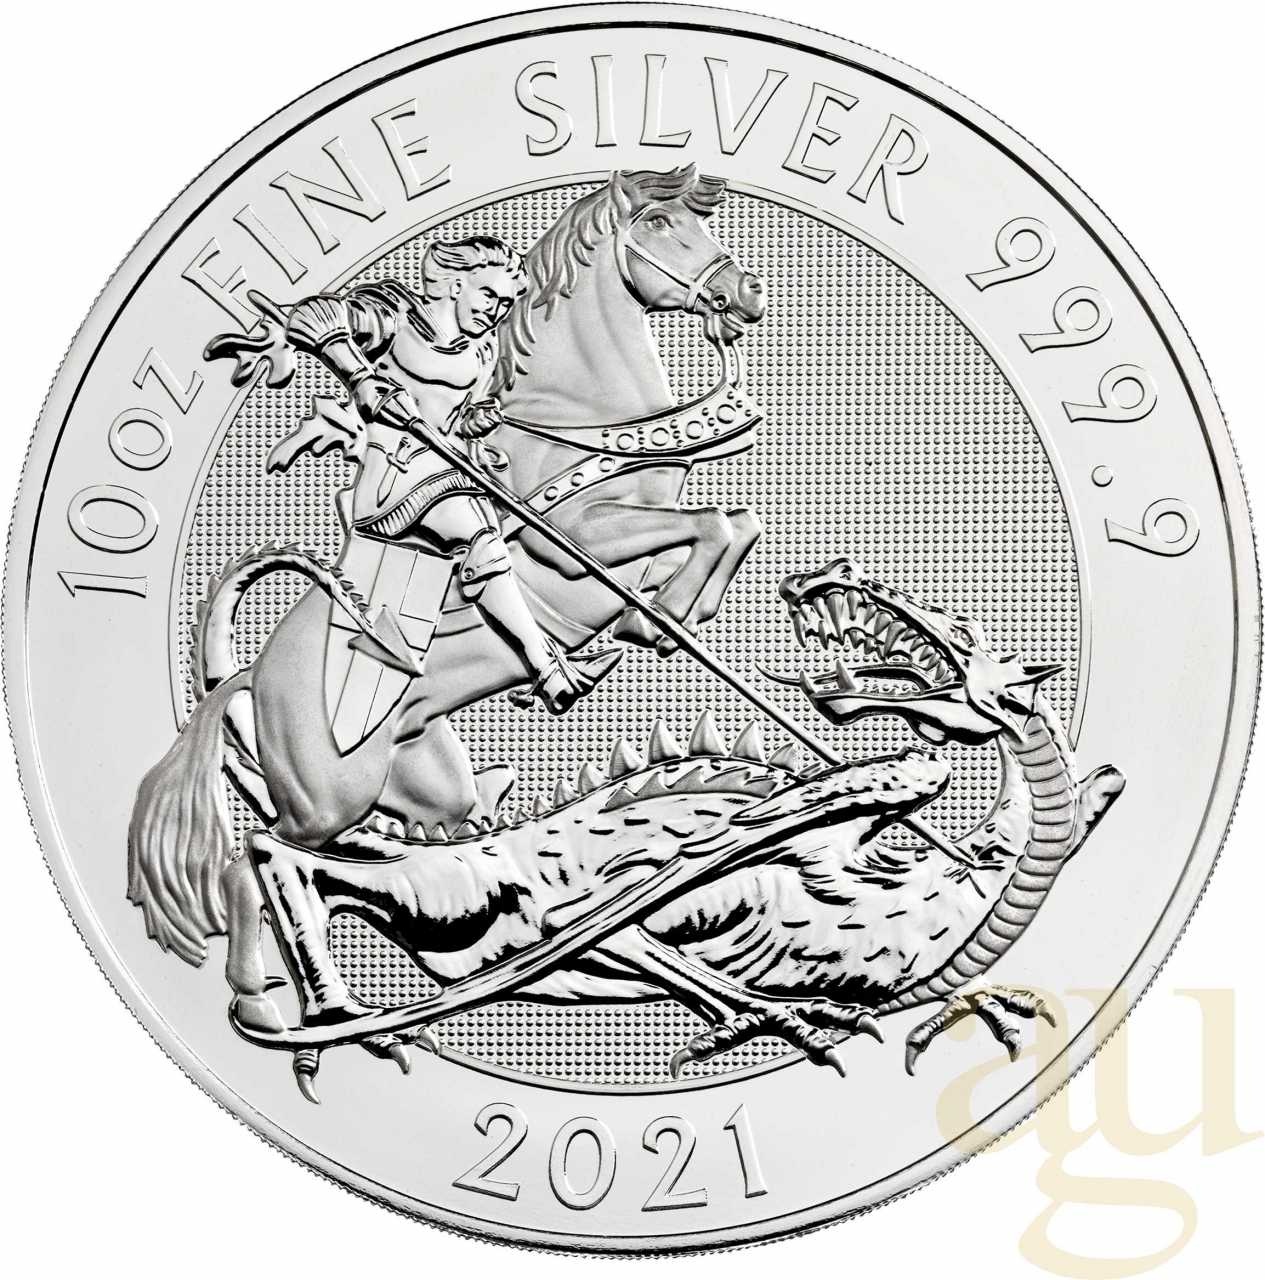 10 Unzen Silbermünze Großbritannien Valiant 2021